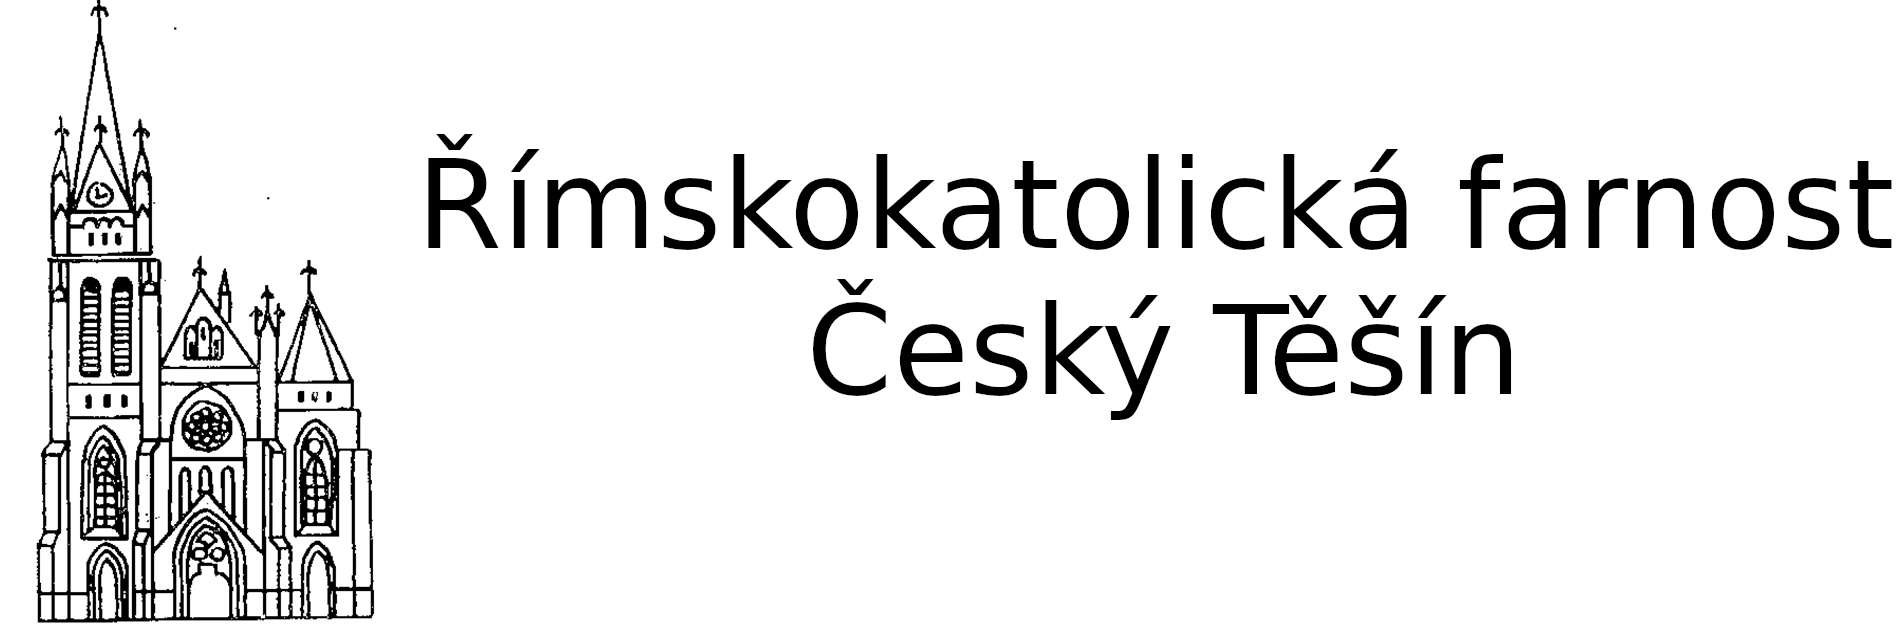 Logo Plán akcí na rok 2021/2022 - Římskokatolická farnost Český Těšín